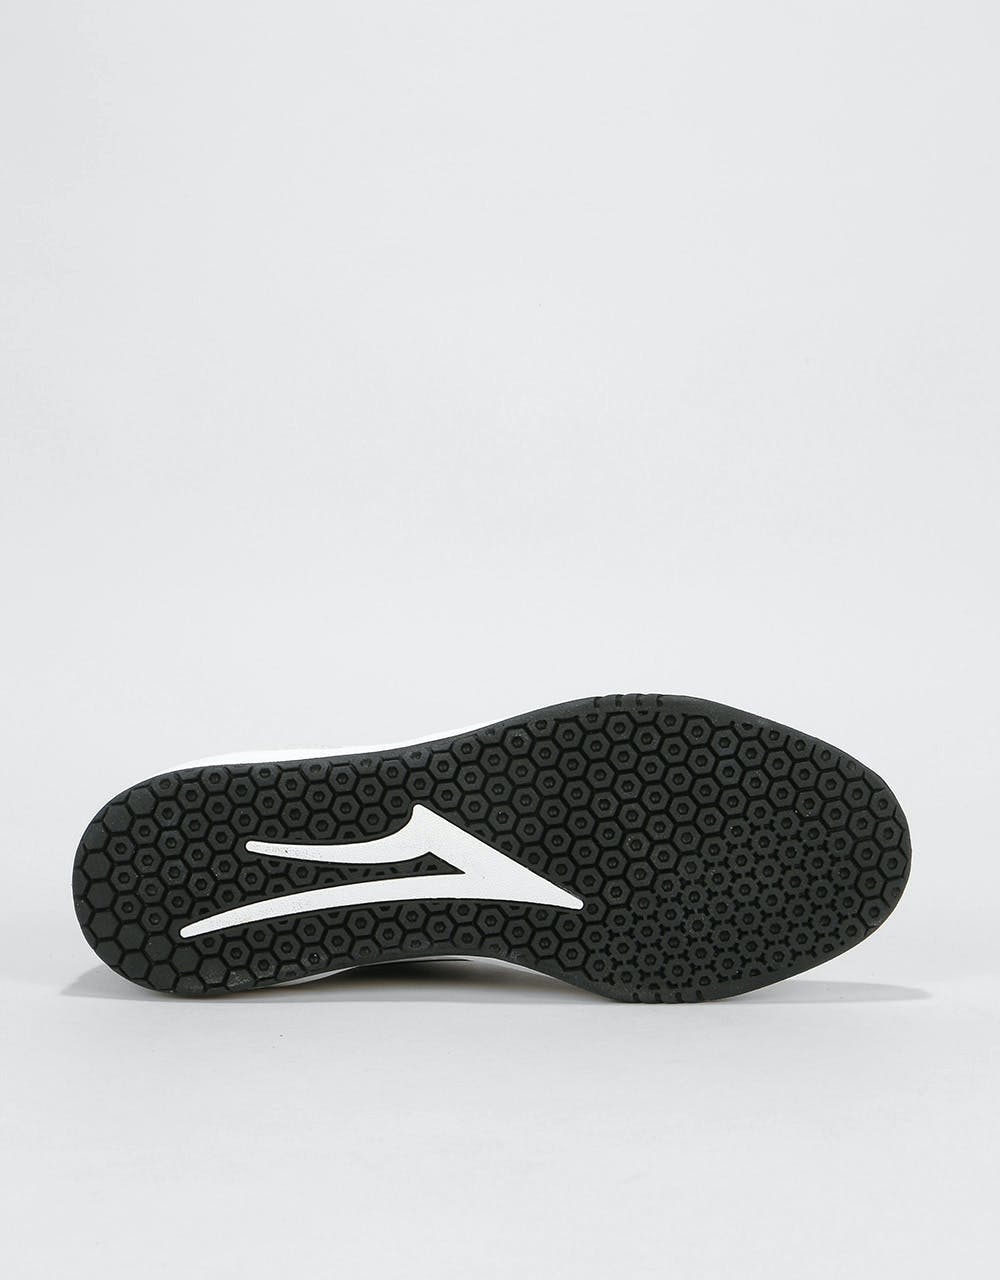 Lakai The Proto Skate Shoes - White/Black Suede